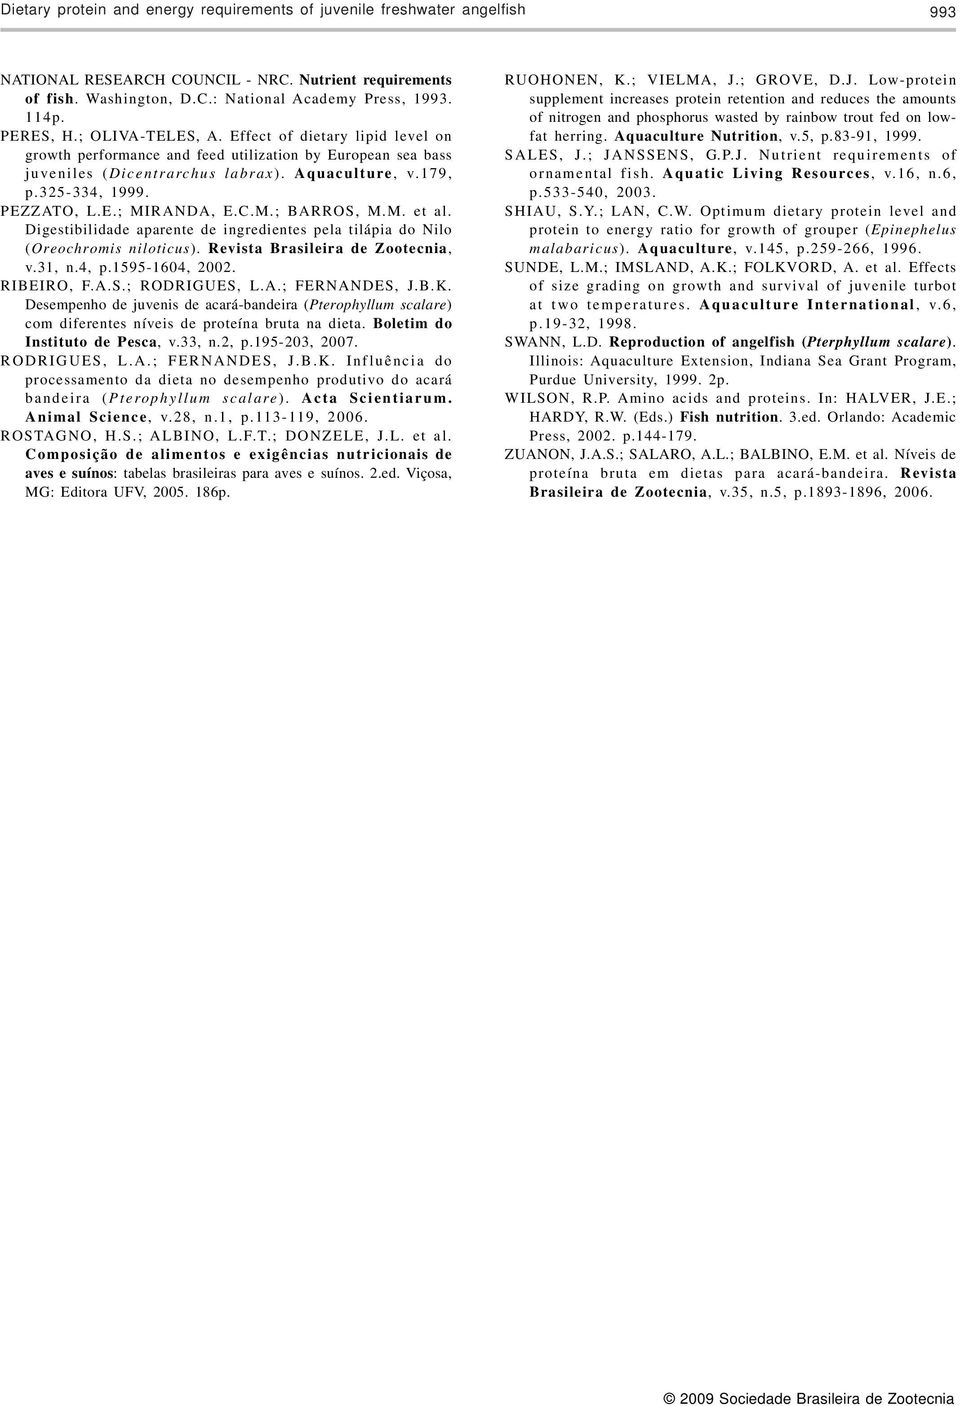 PEZZATO, L.E.; MIRANDA, E.C.M.; BARROS, M.M. et al. Digestibilidade aparente de ingredientes pela tilápia do Nilo (Oreochromis niloticus). Revista Brasileira de Zootecnia, v.31, n.4, p.